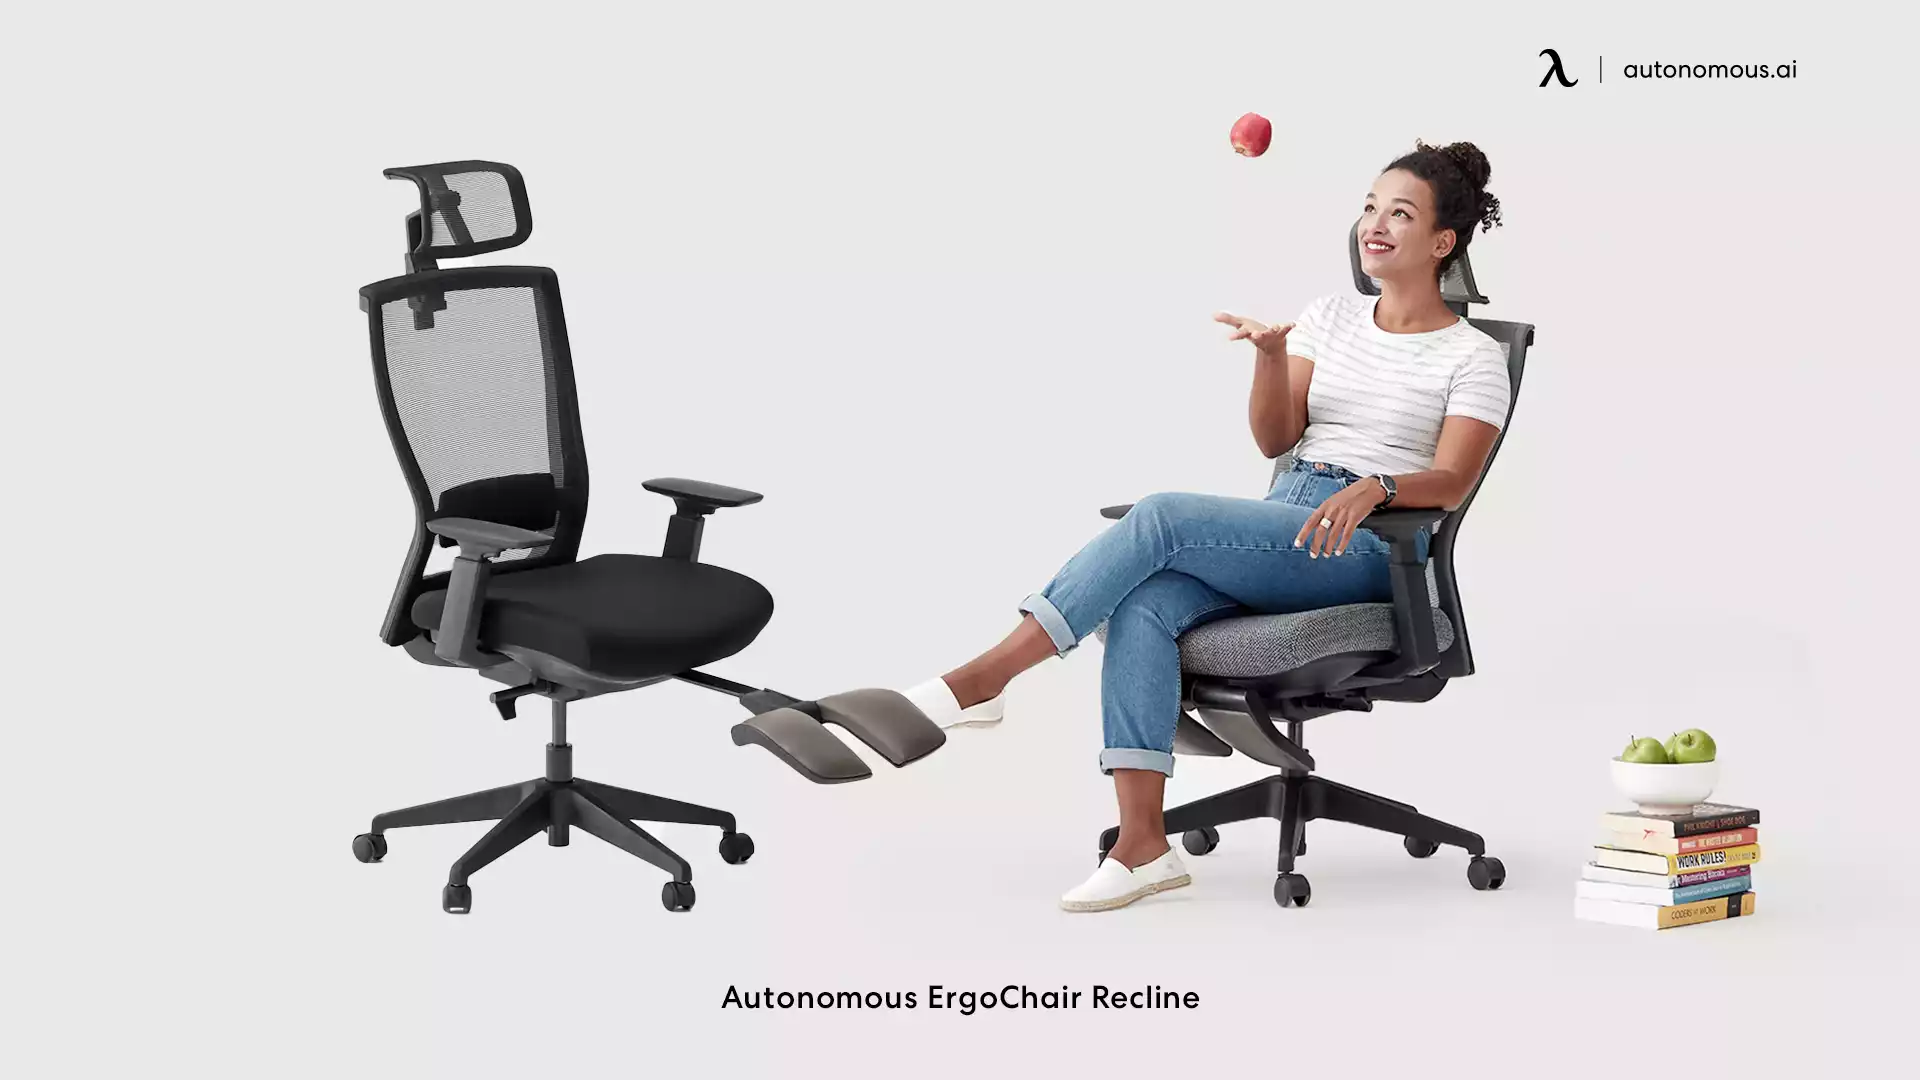 ErgoChair Recline modern black office chair